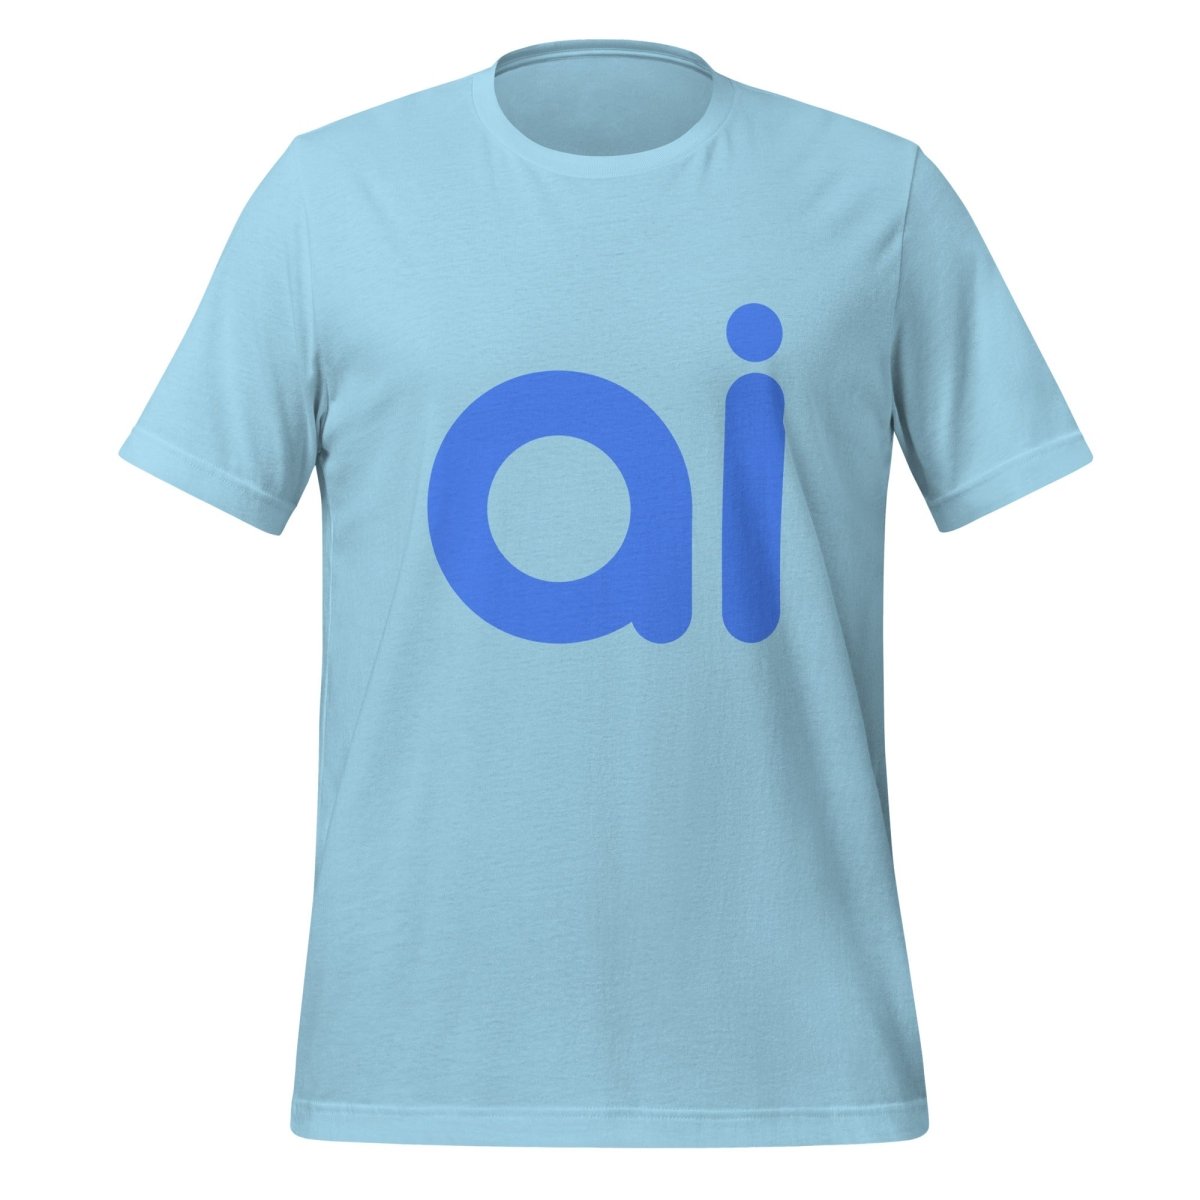 ai T - Shirt (unisex) - Ocean Blue - AI Store